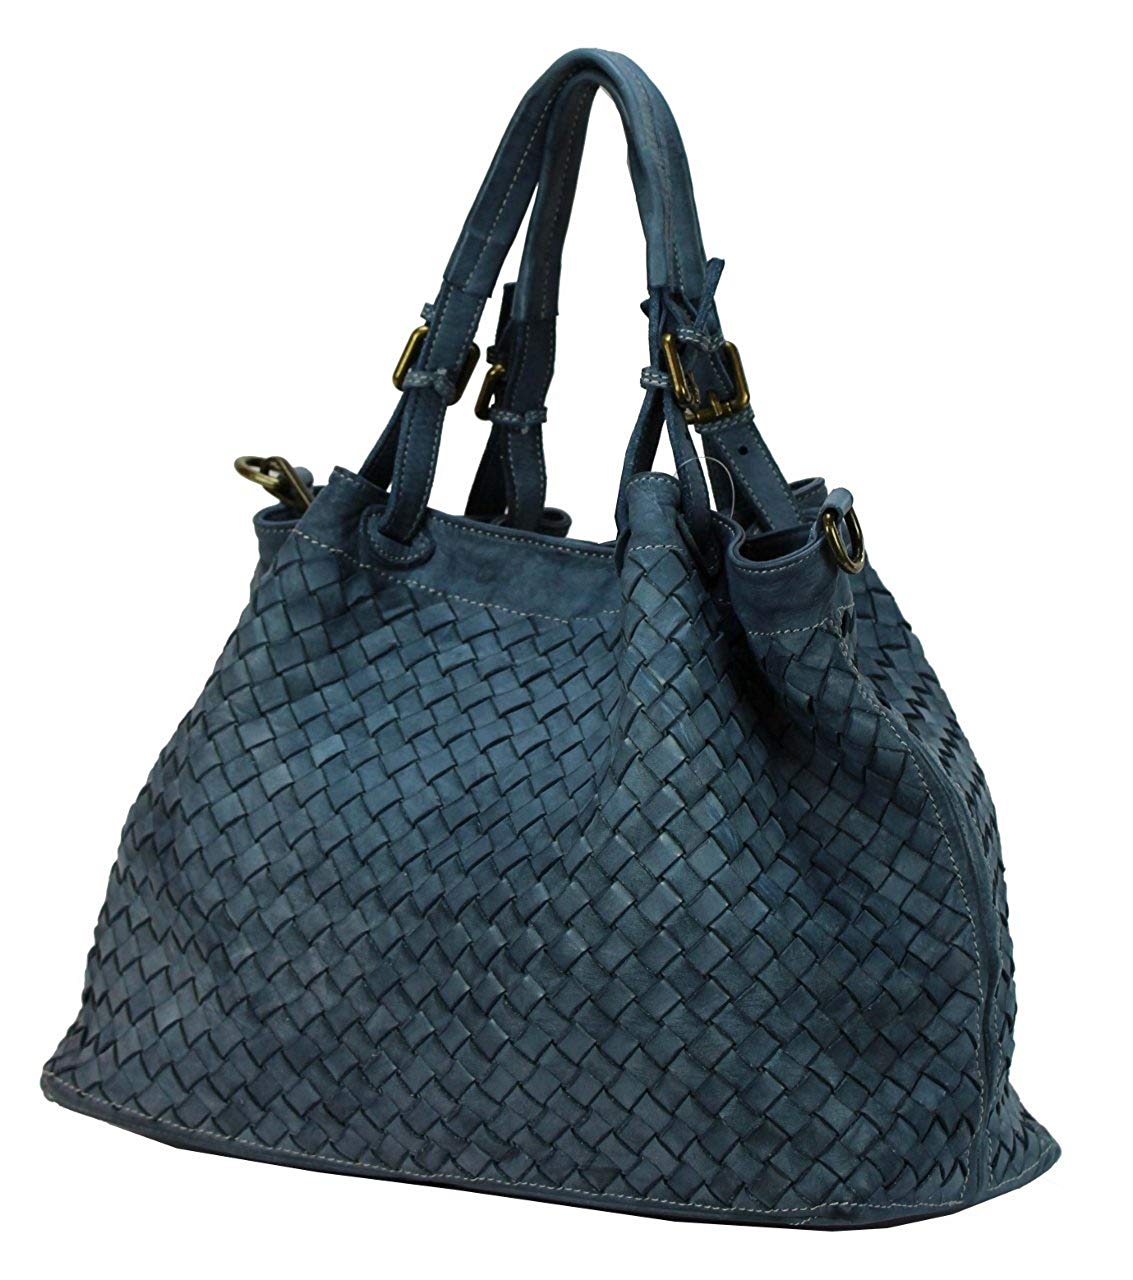 BZNA Rene Bag Blau blue Italy Designer geflochten Damen Handtasche Schultertasche Tasche Schafsleder Shopper Neu